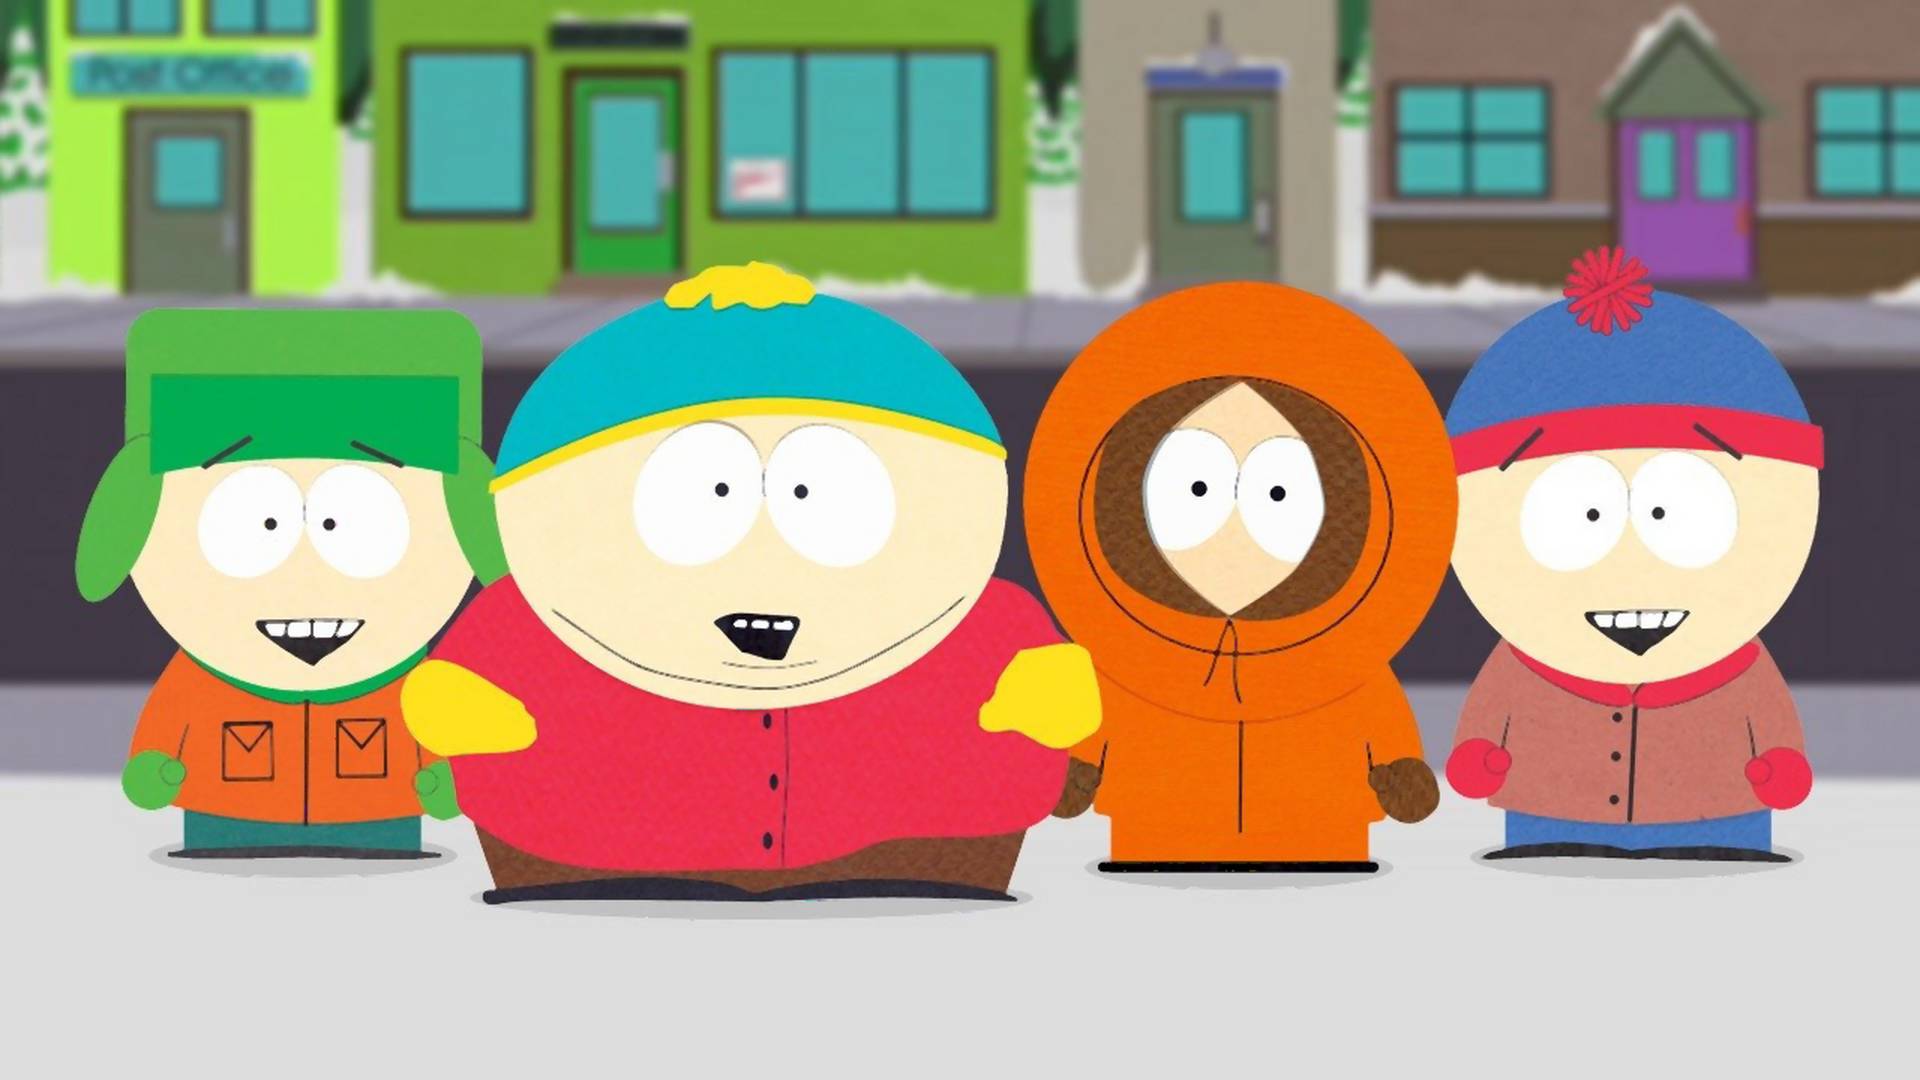 Eric Cartman élete már nem is számít? - egész estés pandémia-epizóddal fújta ki a 2020-as gőzt a South Park